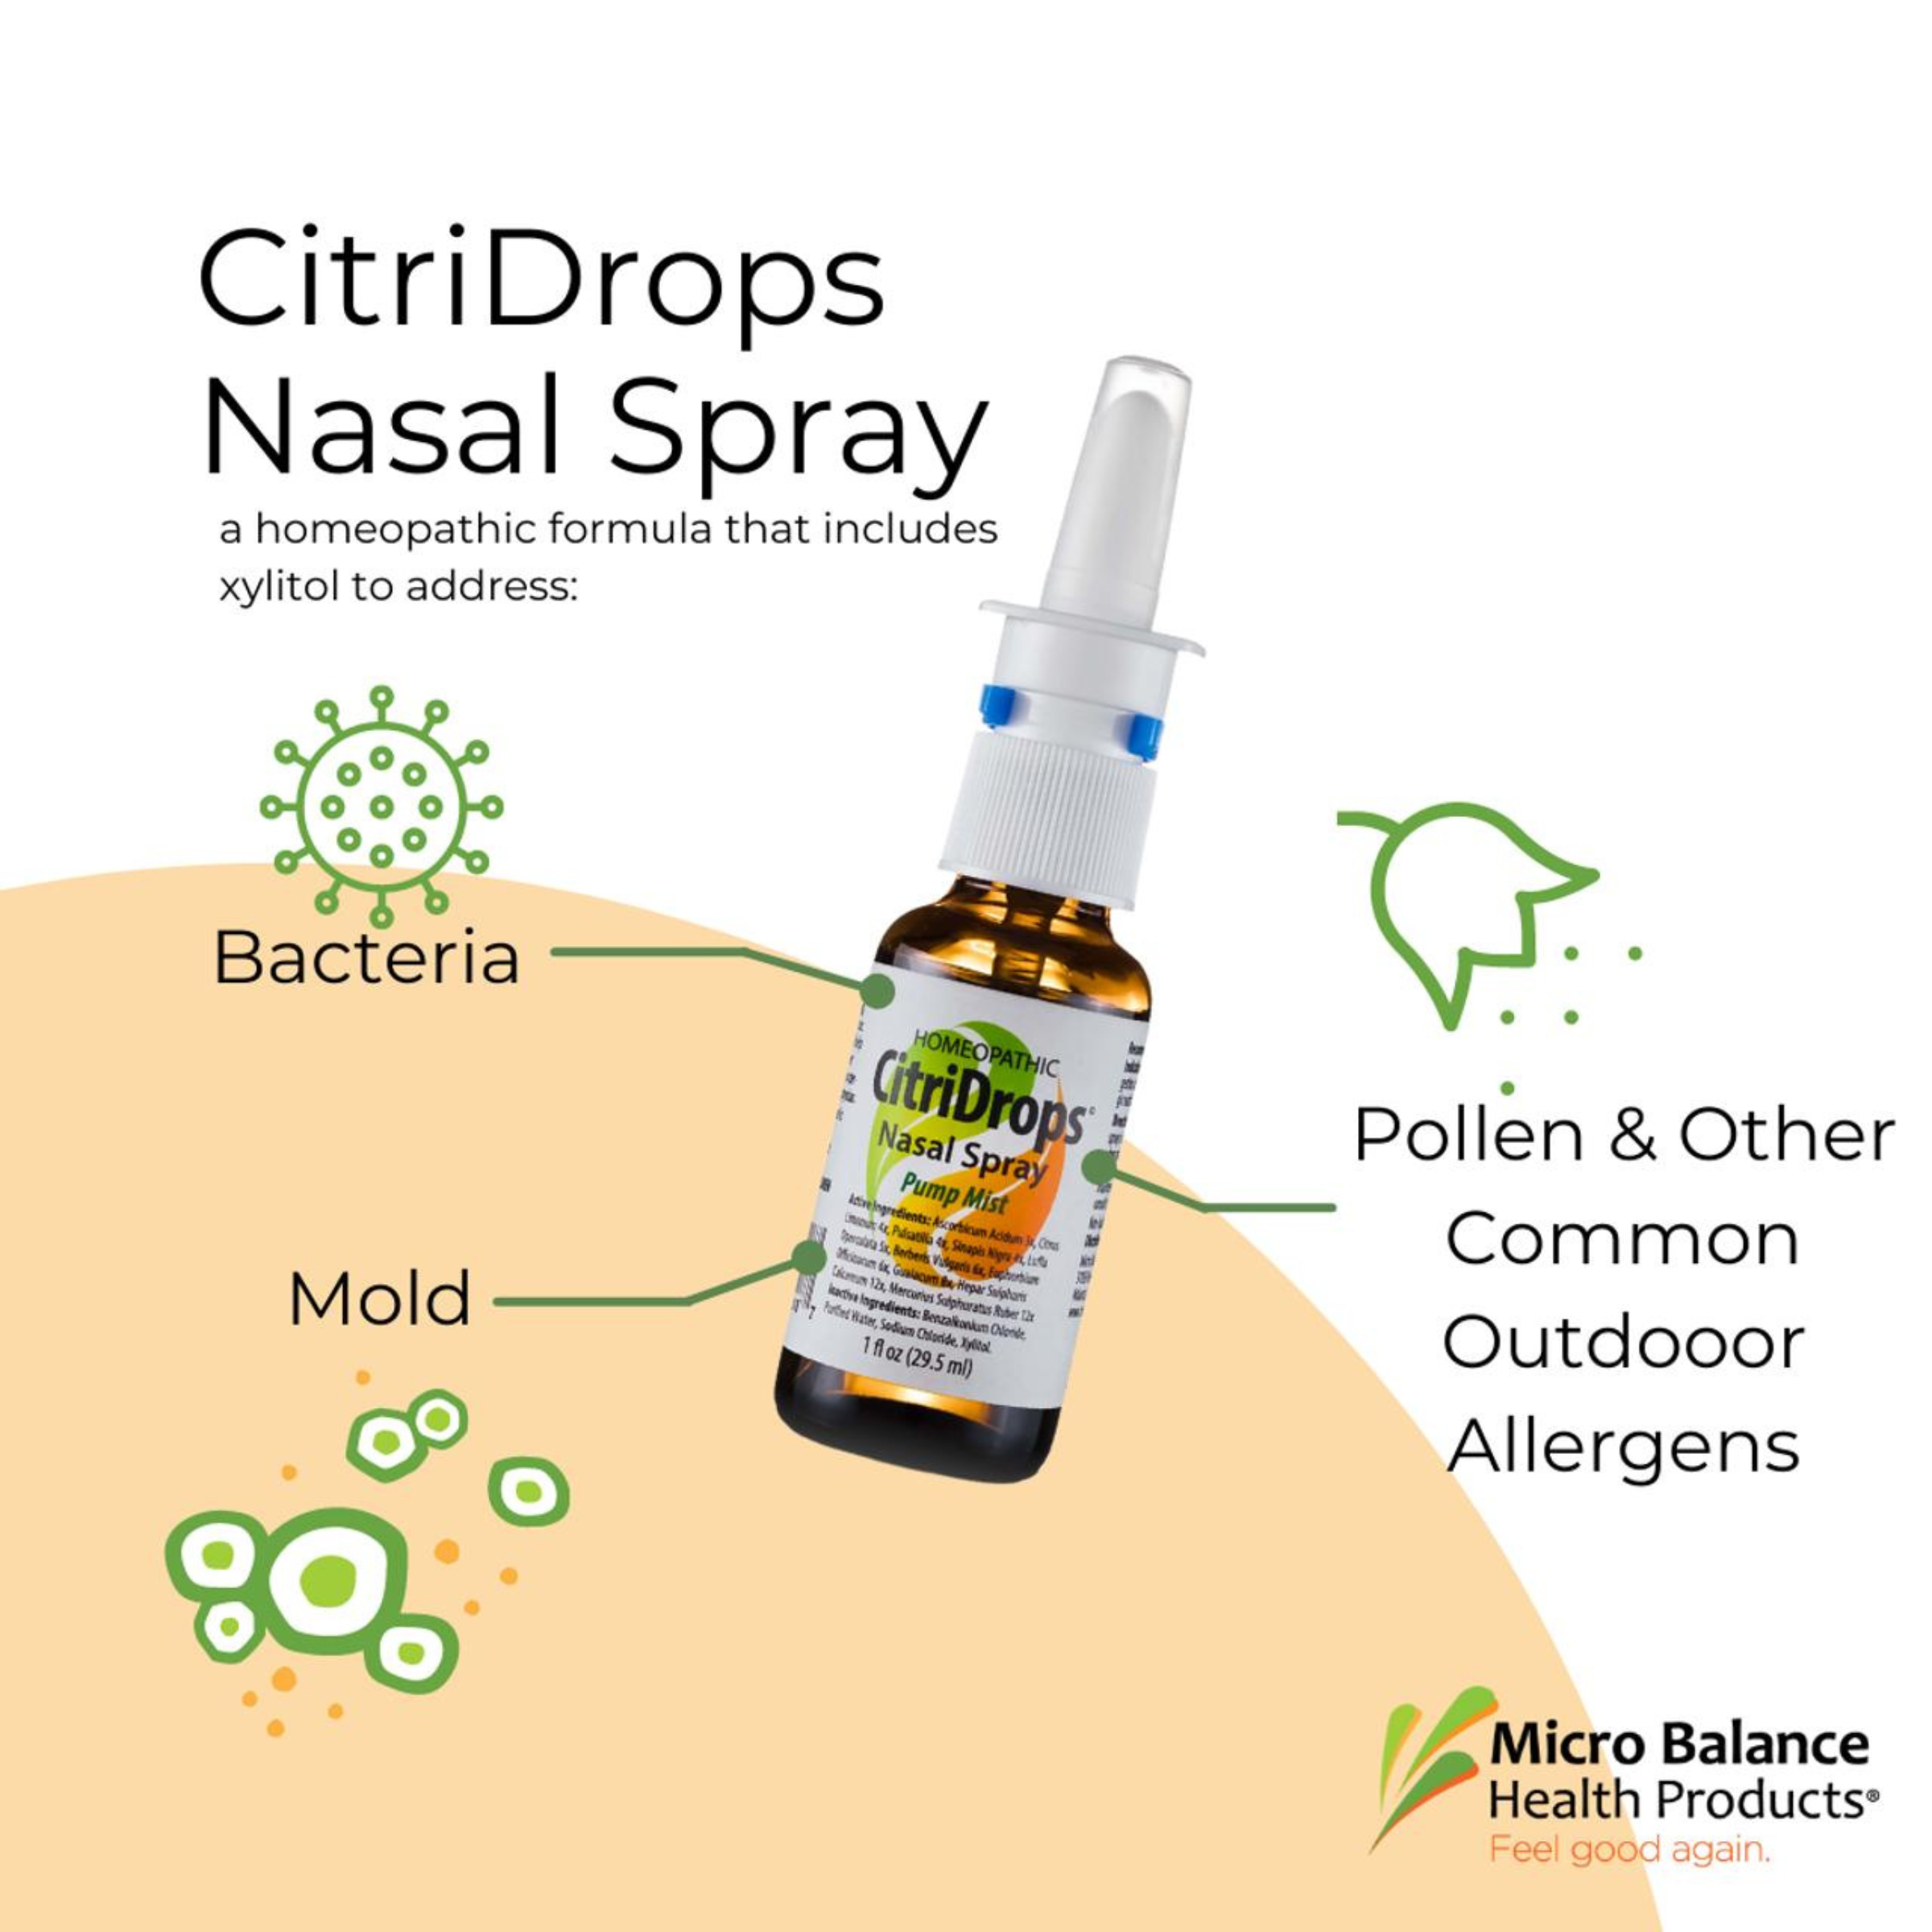 CitriDrops Nasal Spray